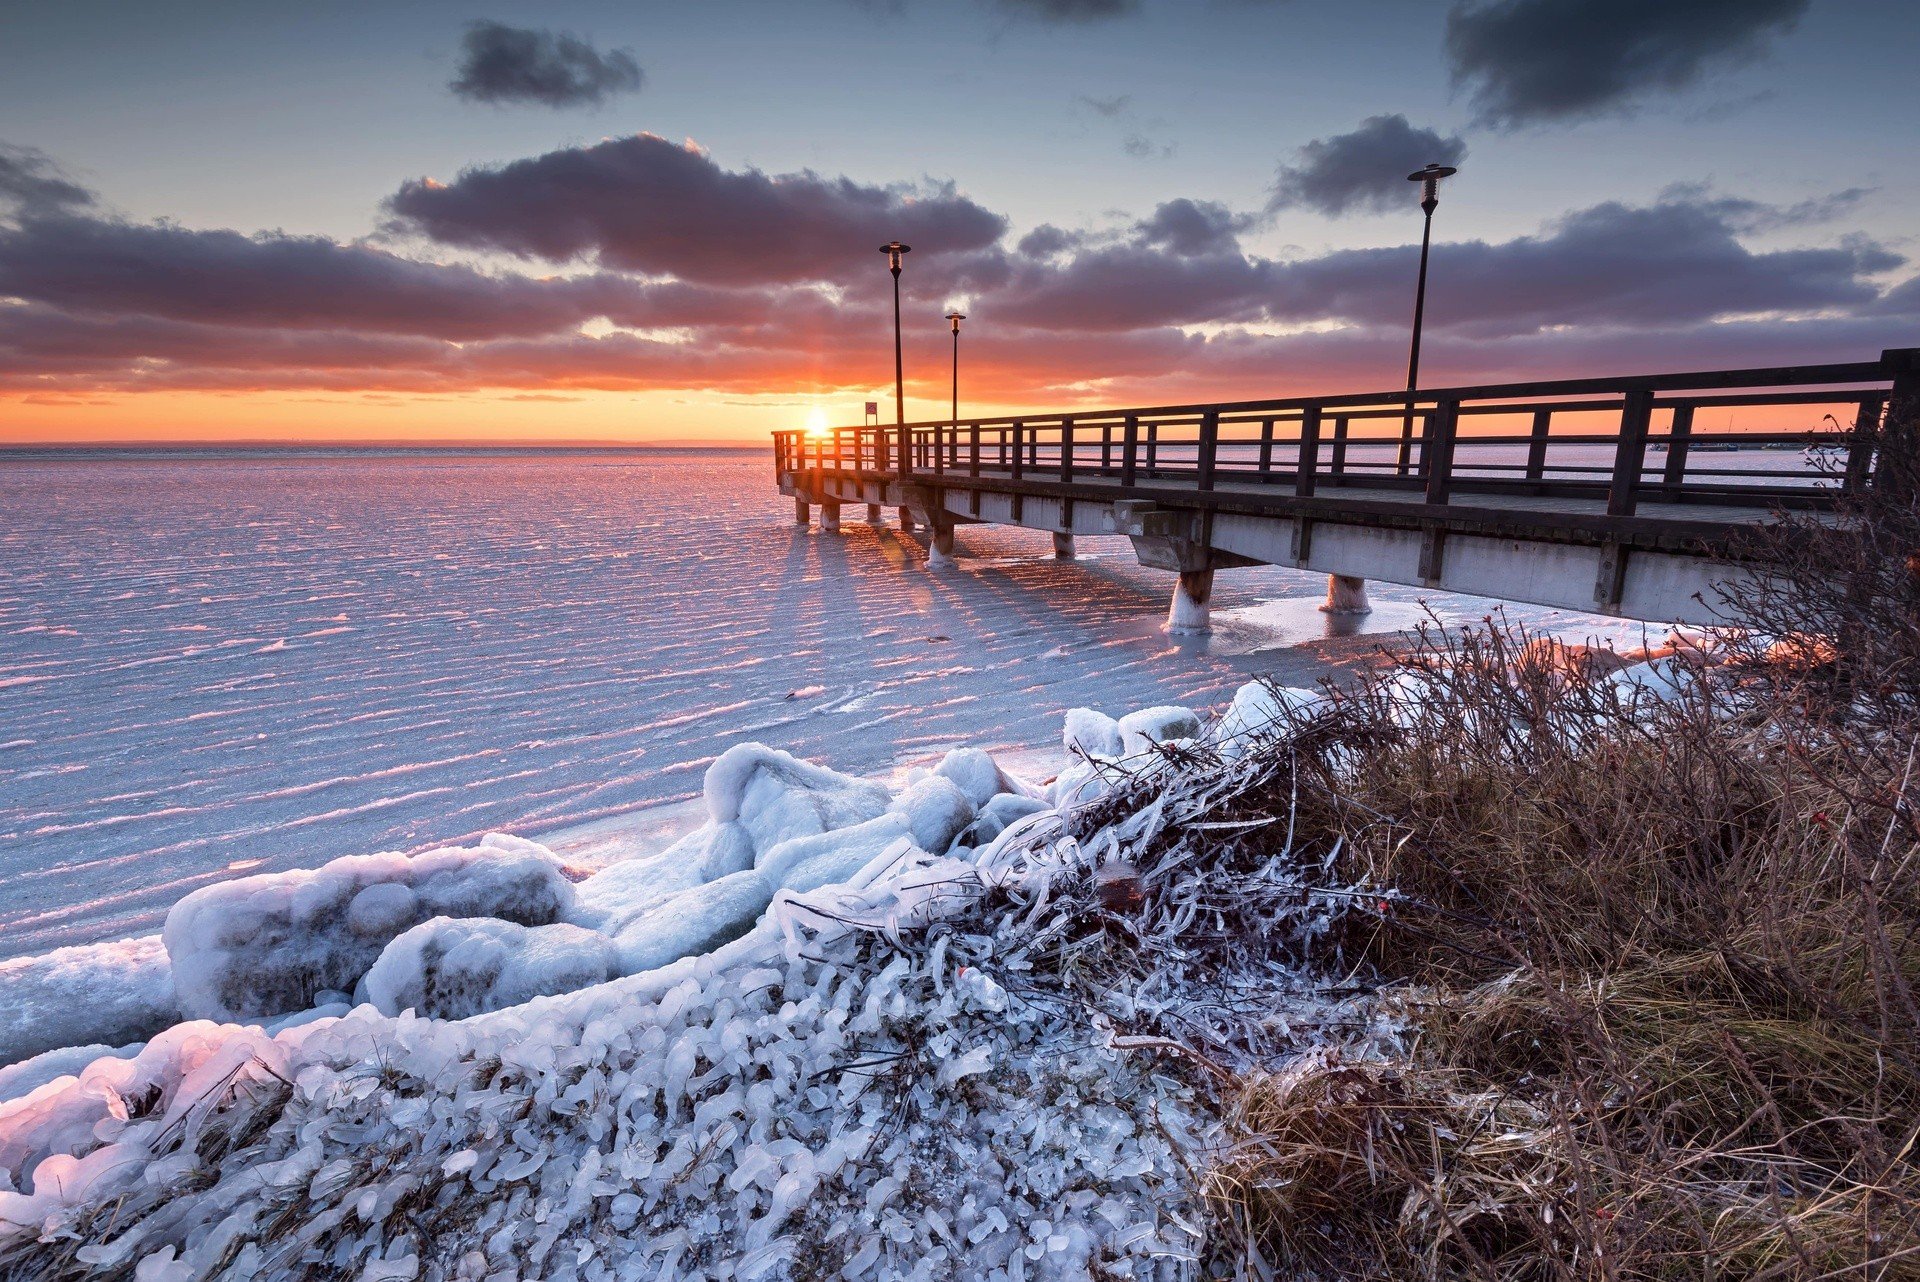 Wskaż miejsce nad morzem świetne na zimowy urlop i wygraj voucher Travelist  | Dziennik Bałtycki